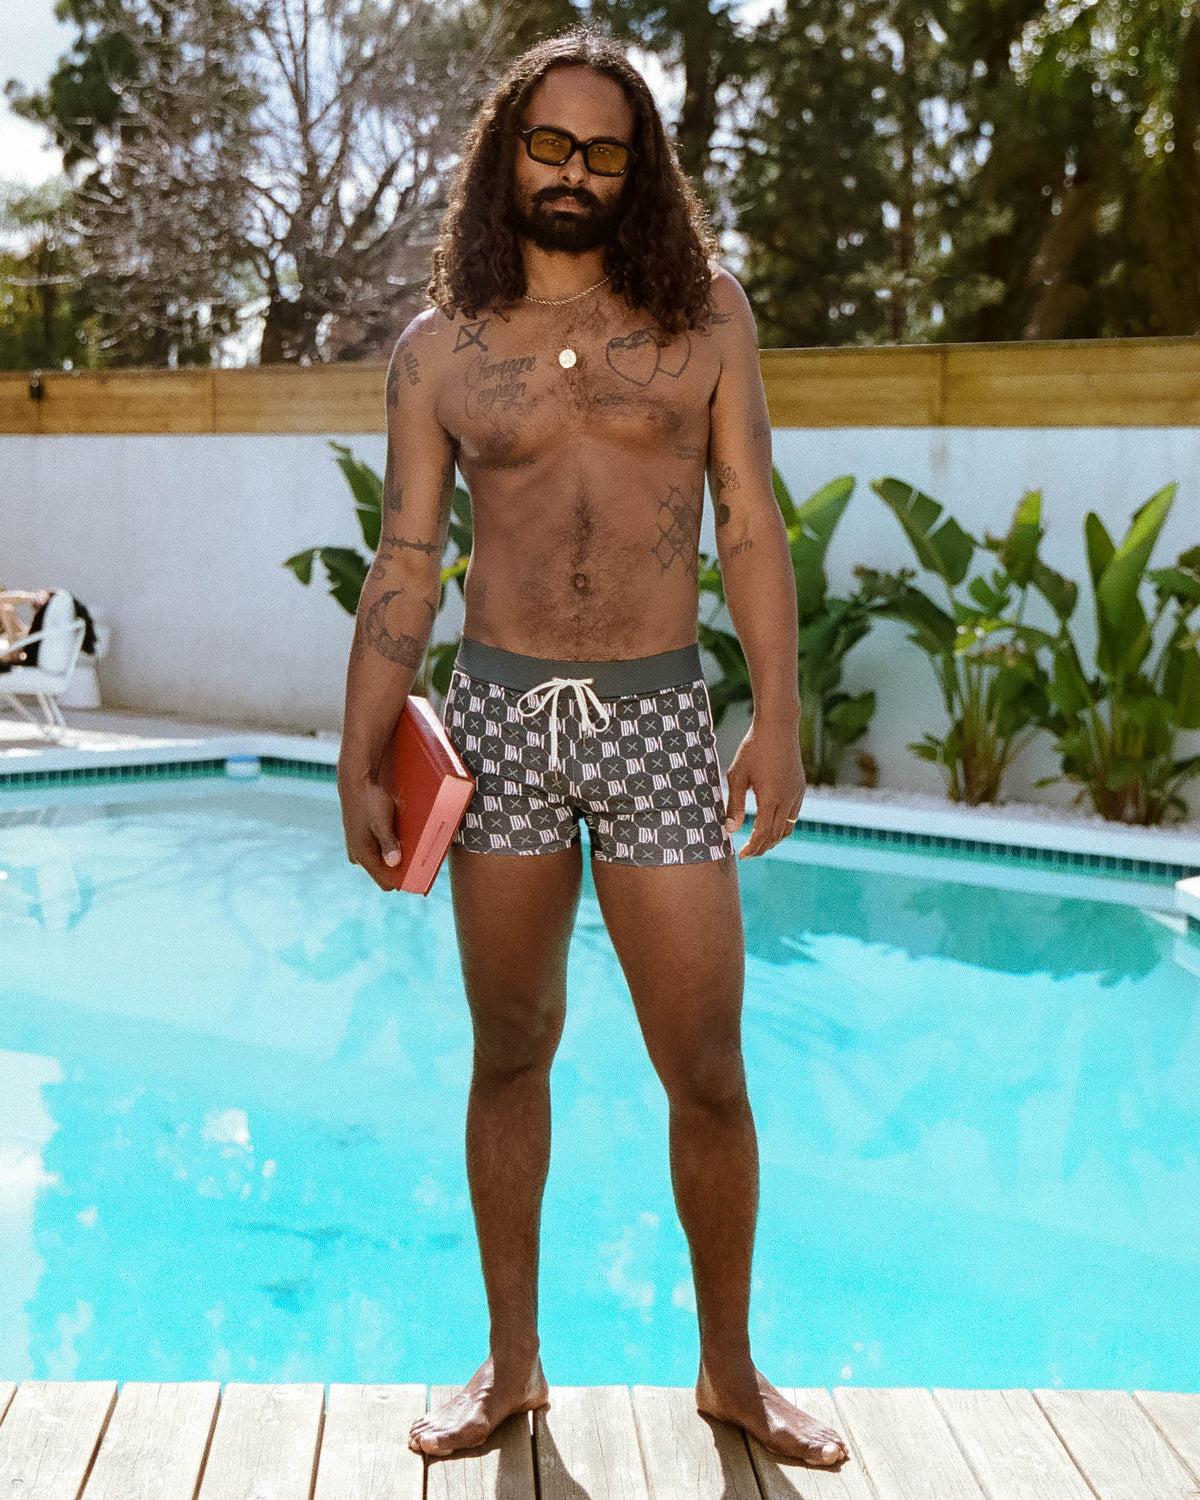 Man standing near swimming pool wearing dandy del swim wear